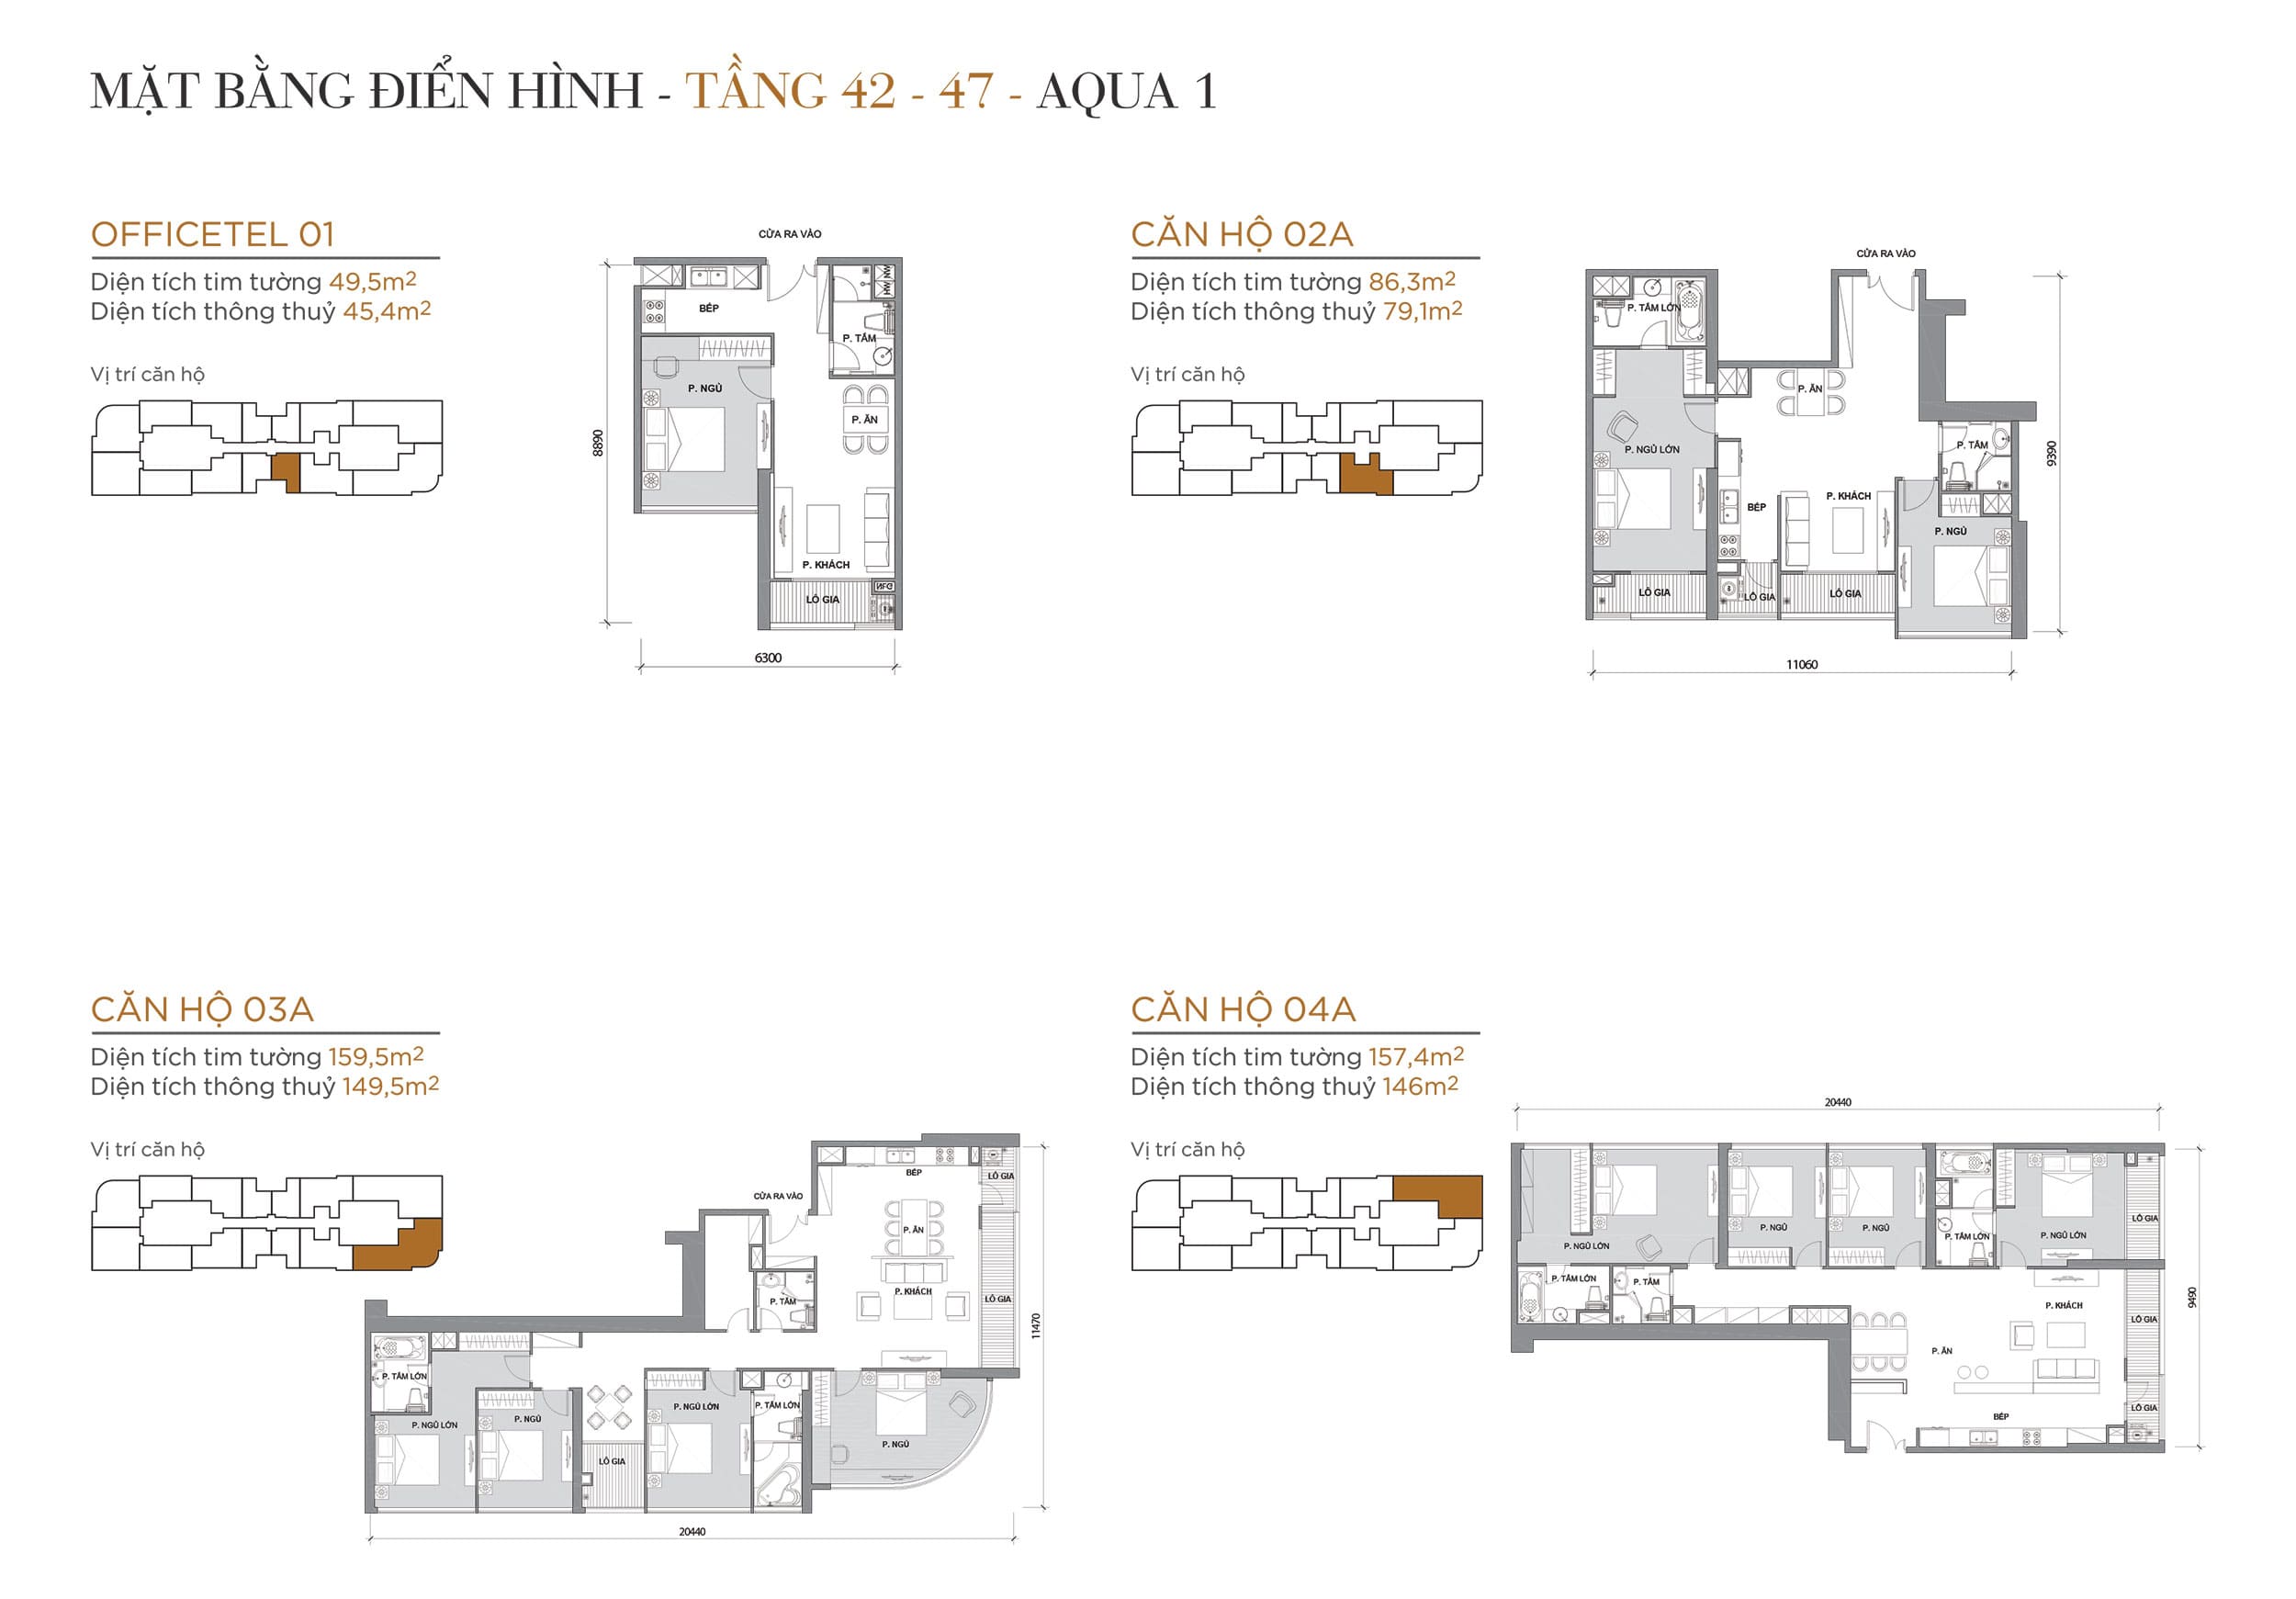 Layout thiết kế điển hình Tầng 42 đến Tầng 47 Tòa Aqua 1 loại Officetel 01, Căn hộ 02A, Căn hộ 03A, Căn hộ 04A.